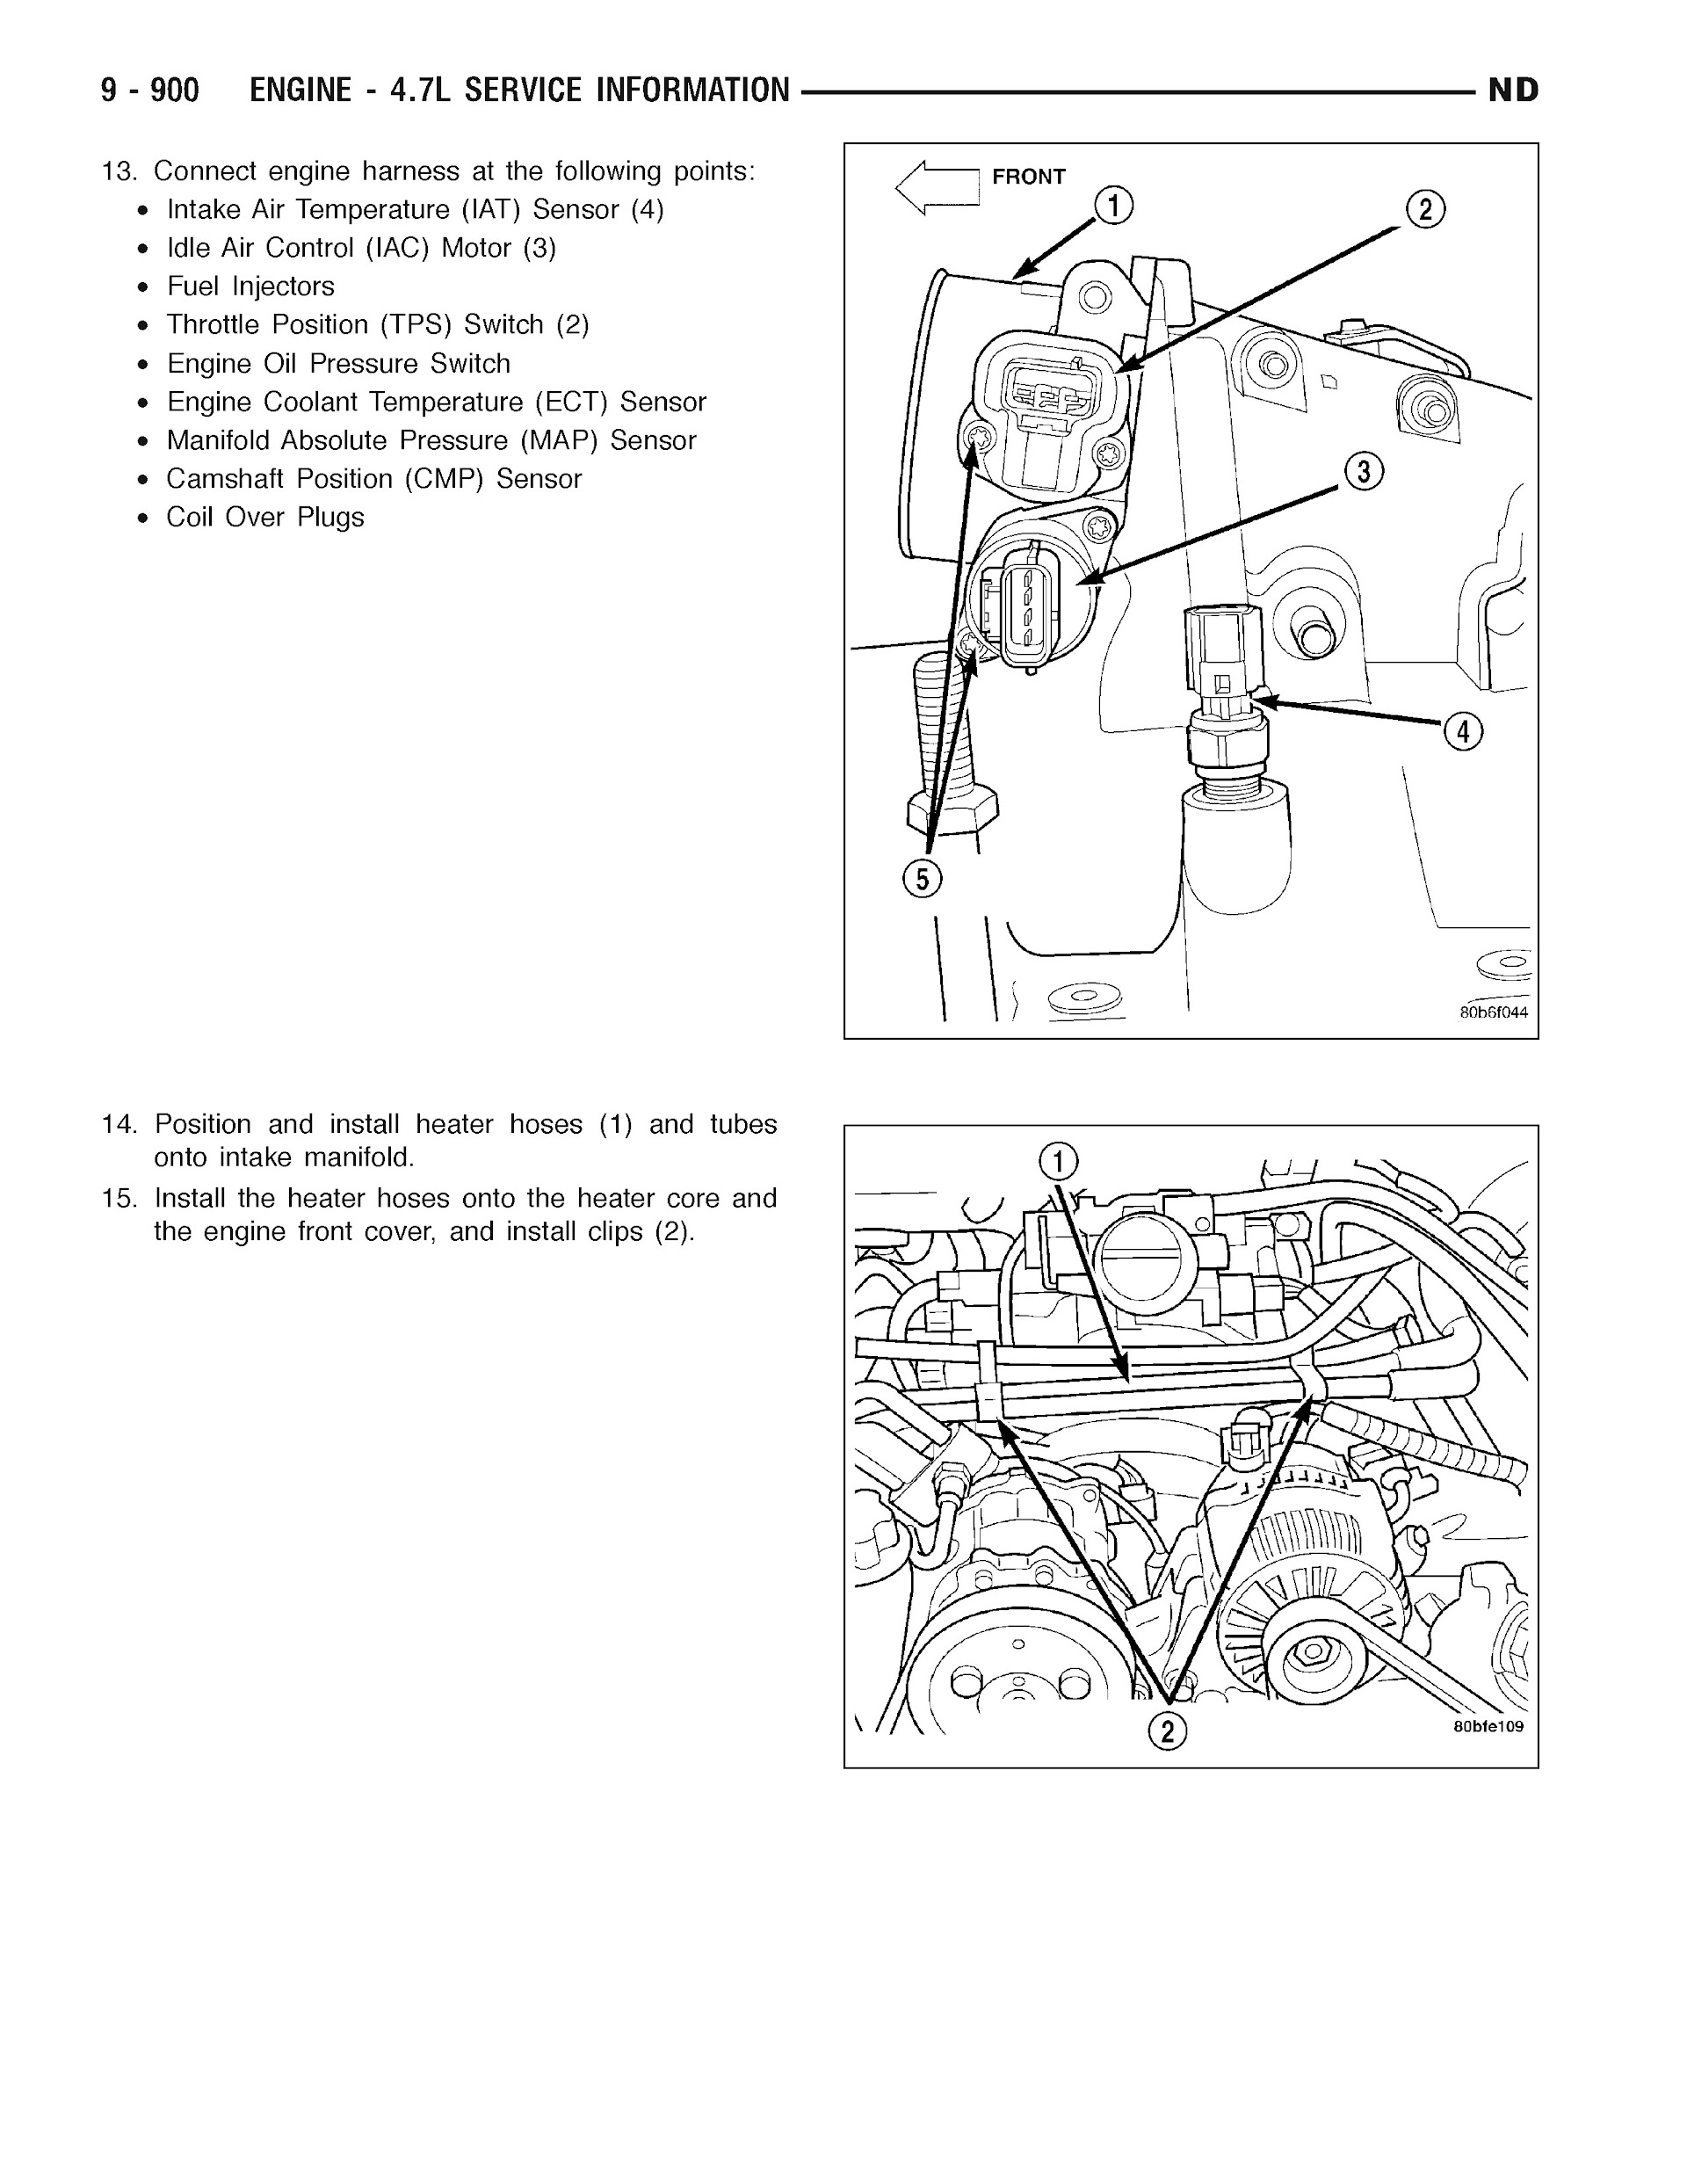 2005-2007 Dodge Dakota Repair Manual, Engine 4.7L